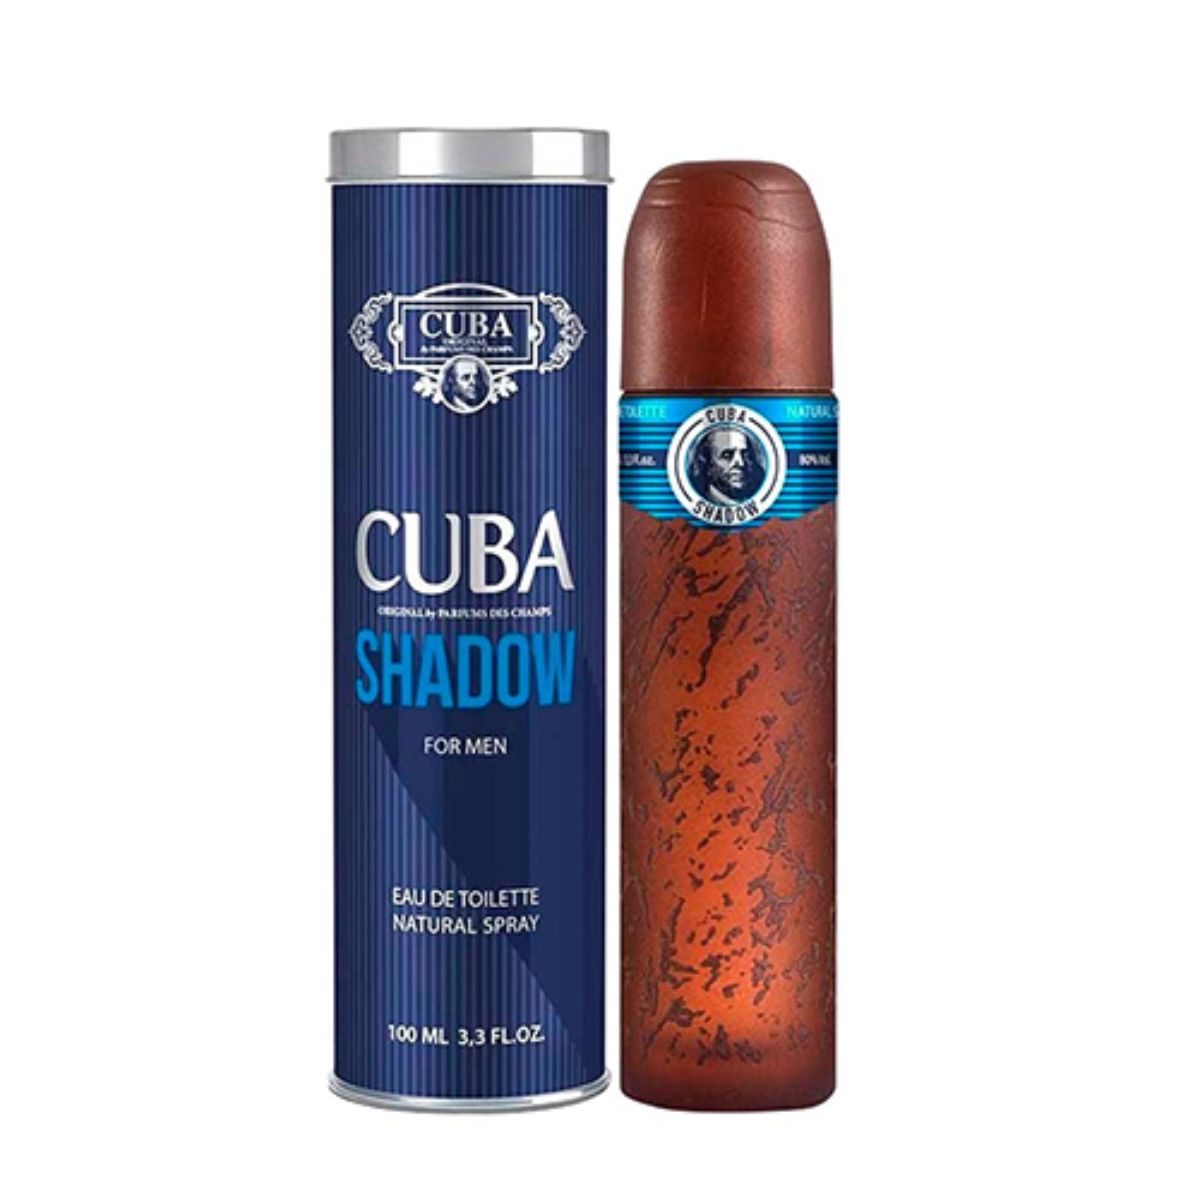 CUBA SHADOW MEN EDT 100 ML